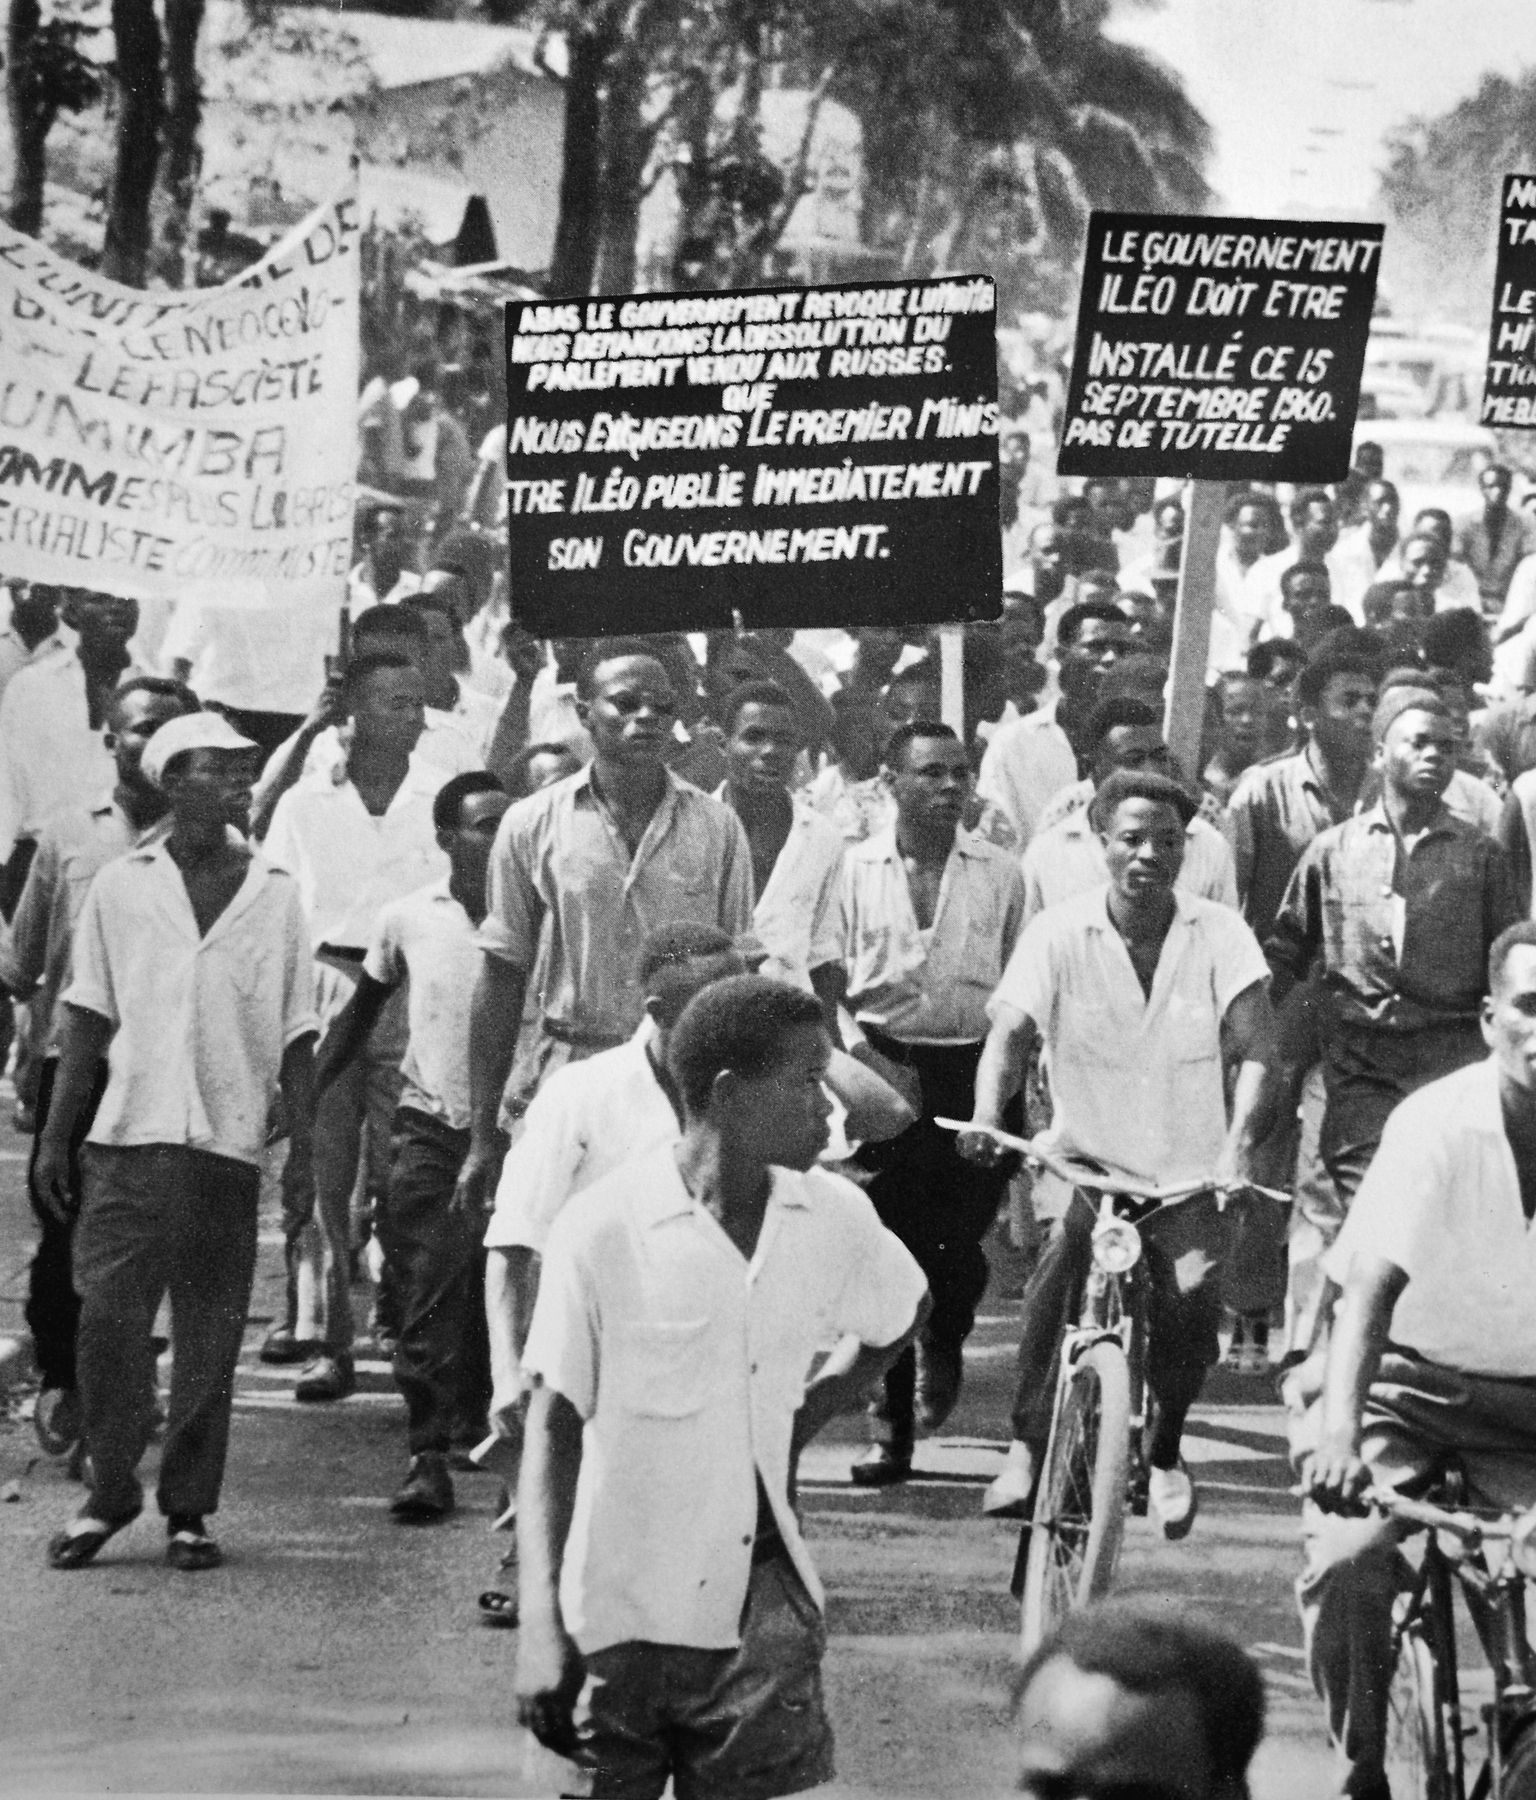 Fotografia em preto e branco. Grupo de pessoas reunidas em uma manifestação. Carregam cartazes com escritos em francês.